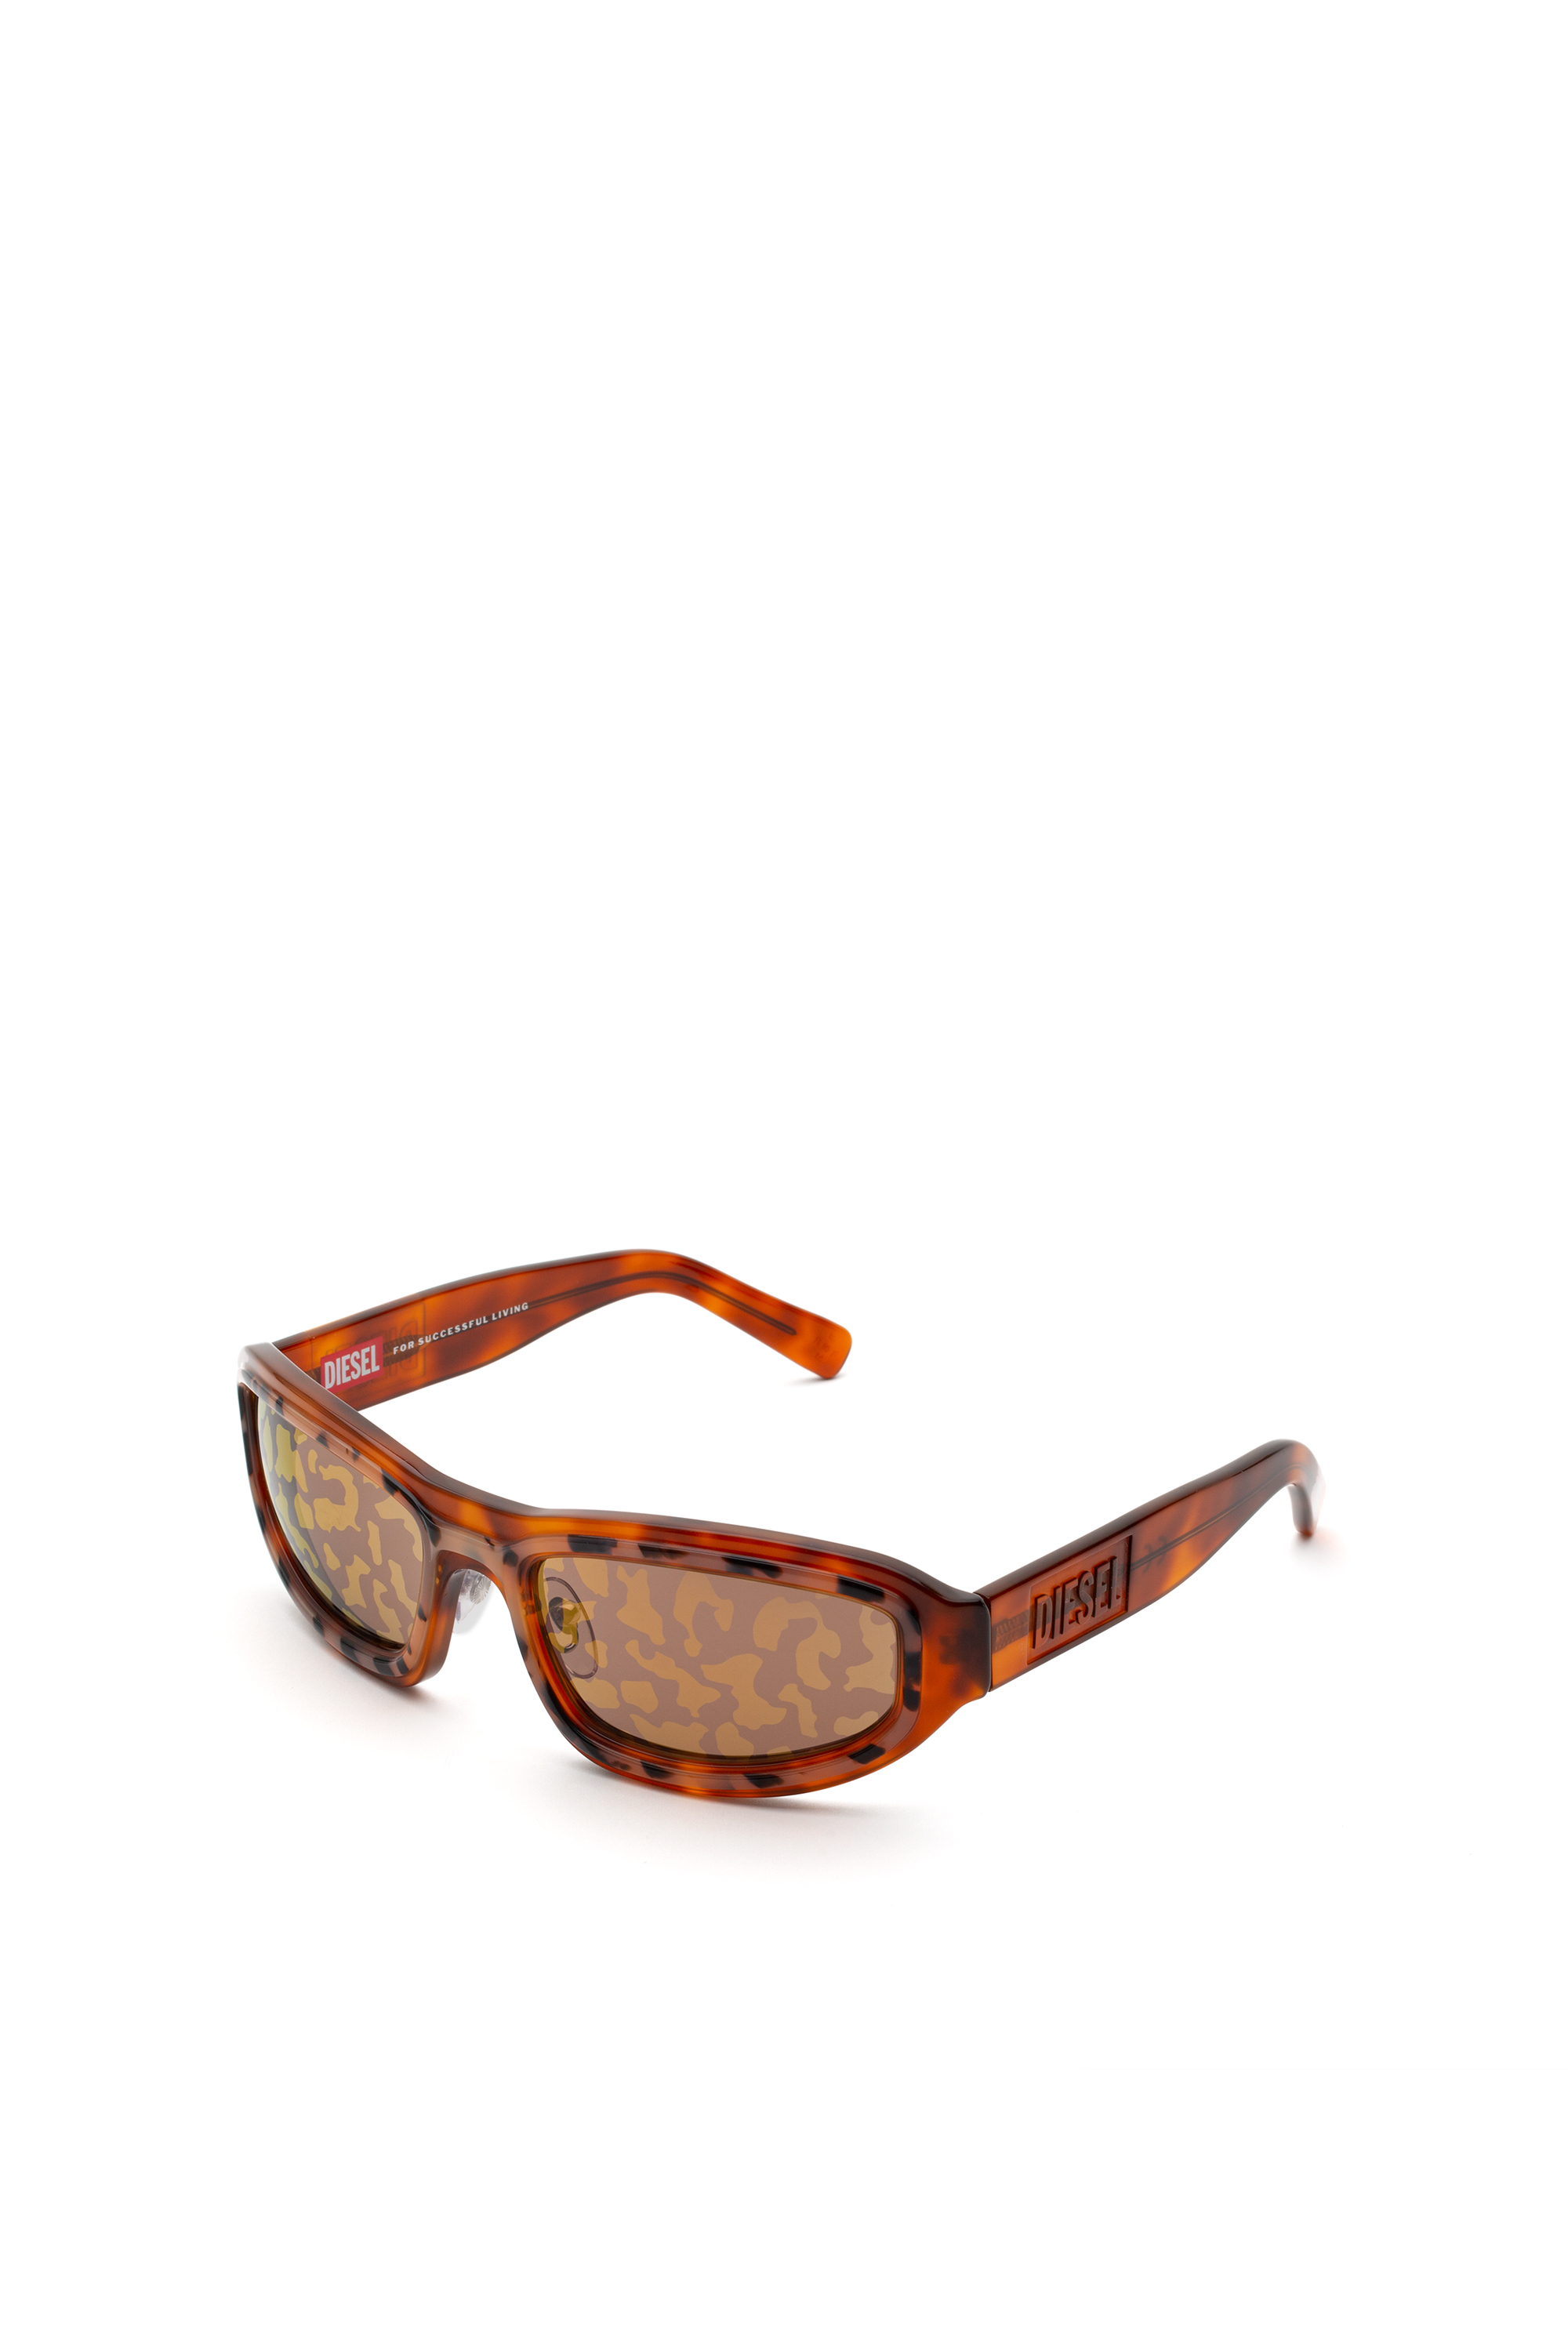 0,25 tot Accessoires Zonnebrillen & Eyewear Leesbrillen Diesel leesbril van 3,50 Ark blauw/ zwart mens dl5237 092 